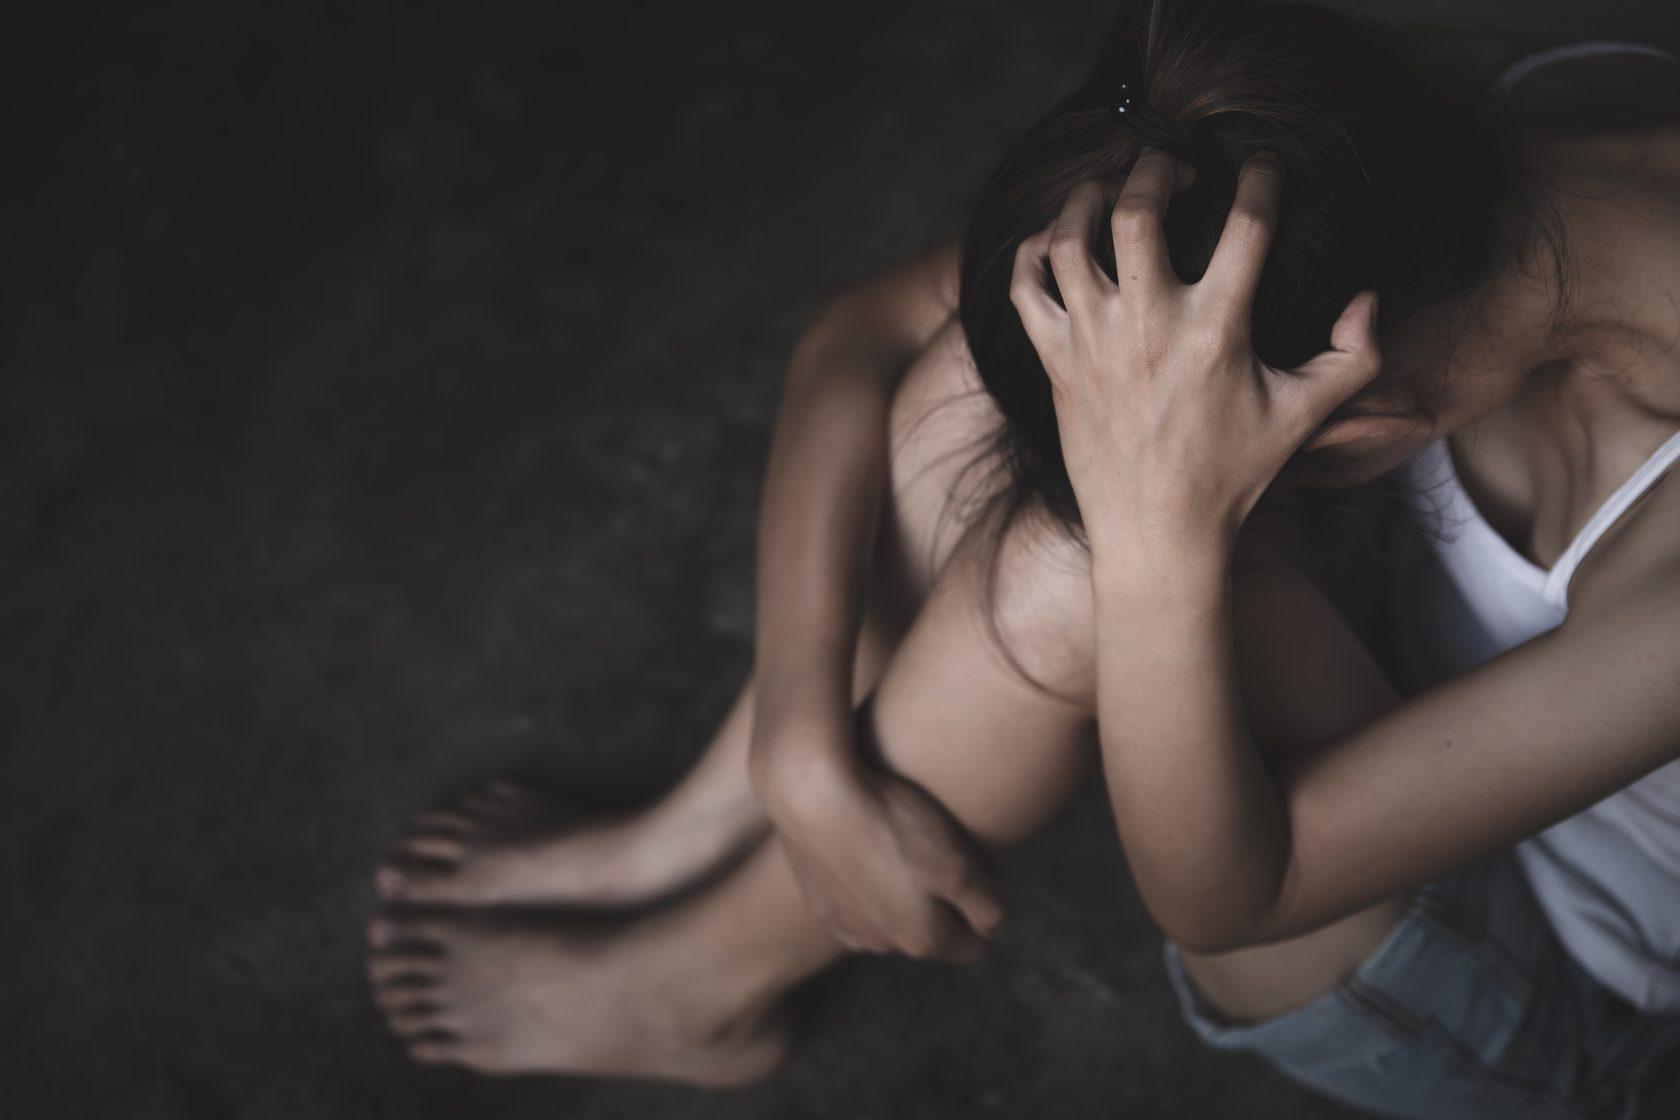 В Чите трое узбеков изнасиловали девушку